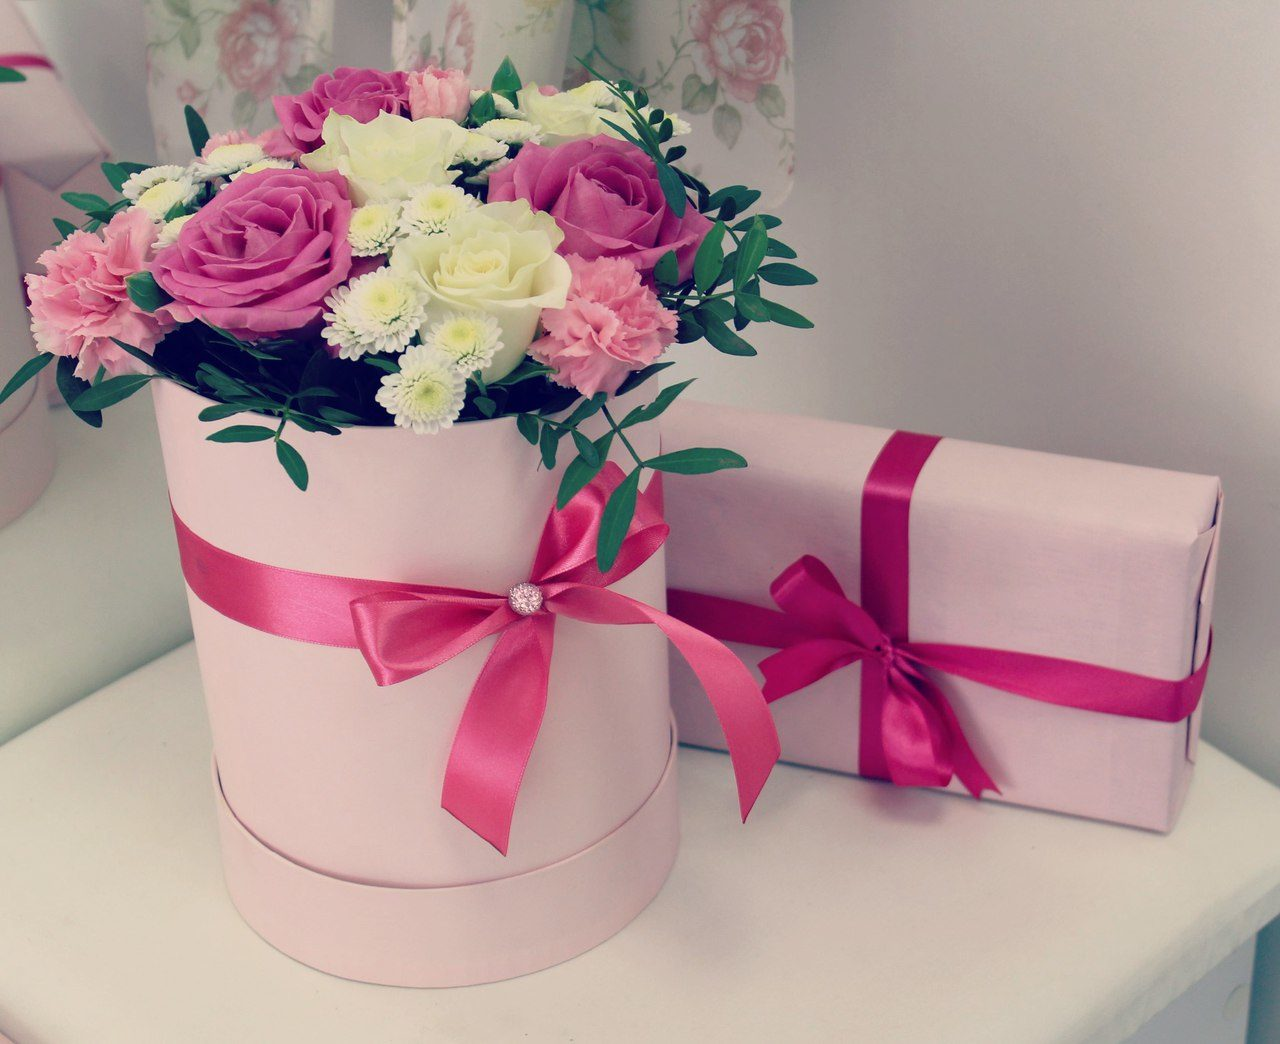 Фото доставленной коробки с цветами и подарком